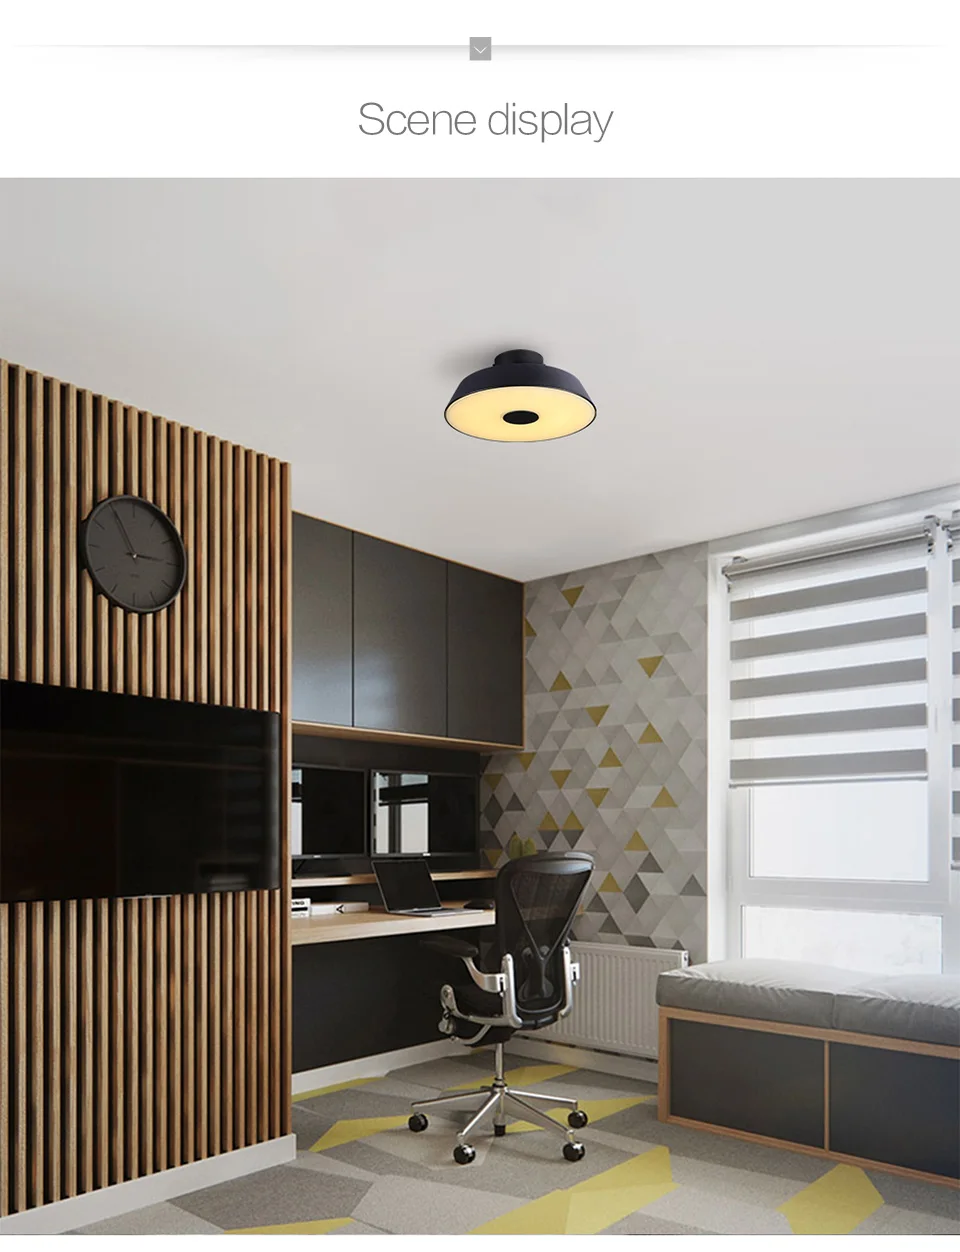 Aisilan Круглый круглый алюминиевый современный светодиодный потолочный светильник, Регулируемая лампа для гостиной, спальни, обеденного стола, офиса, конференц-зала